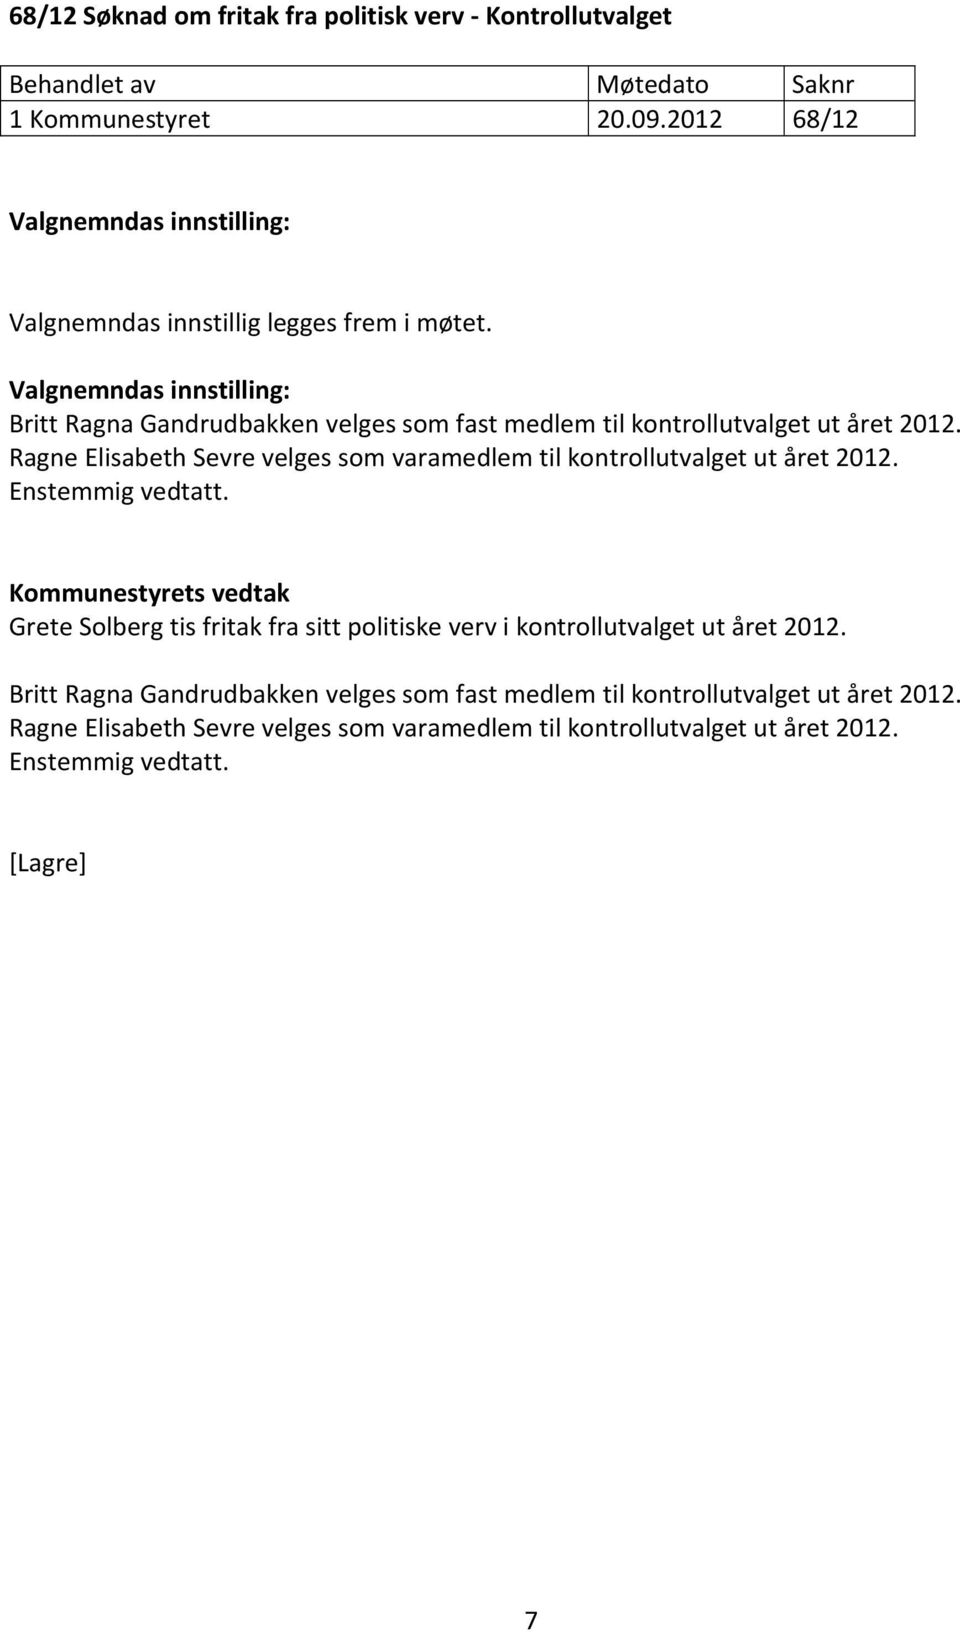 Valgnemndas innstilling: Britt Ragna Gandrudbakken velges som fast medlem til kontrollutvalget ut året 2012.